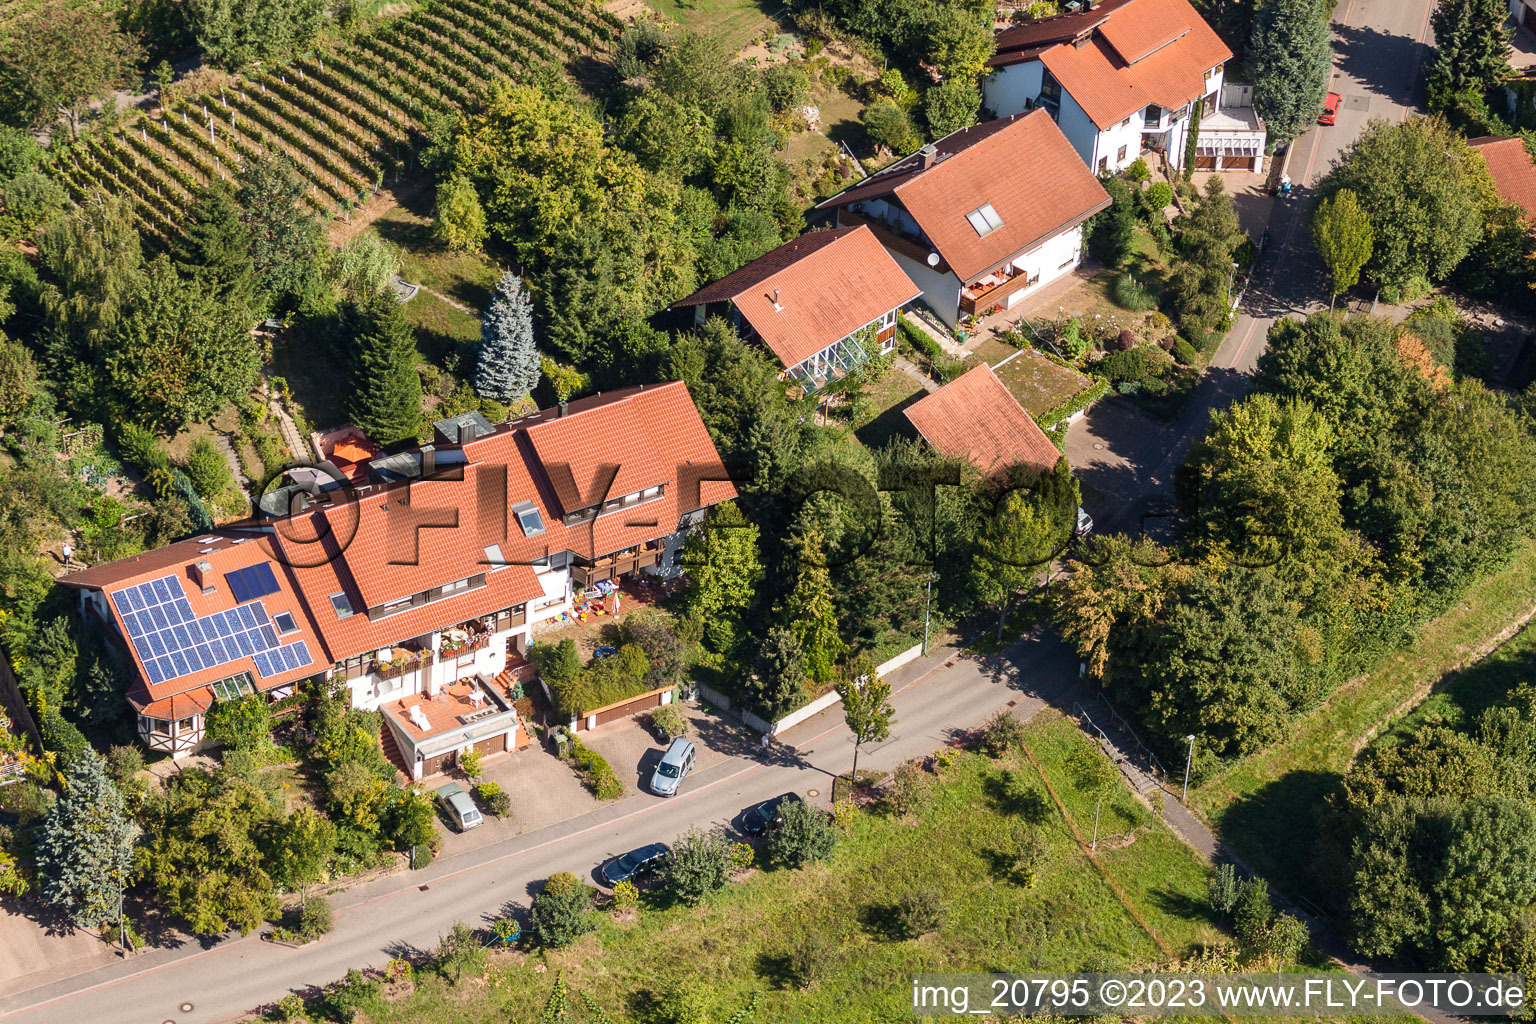 Ortsteil Fessenbach in Offenburg im Bundesland Baden-Württemberg, Deutschland aus der Drohnenperspektive